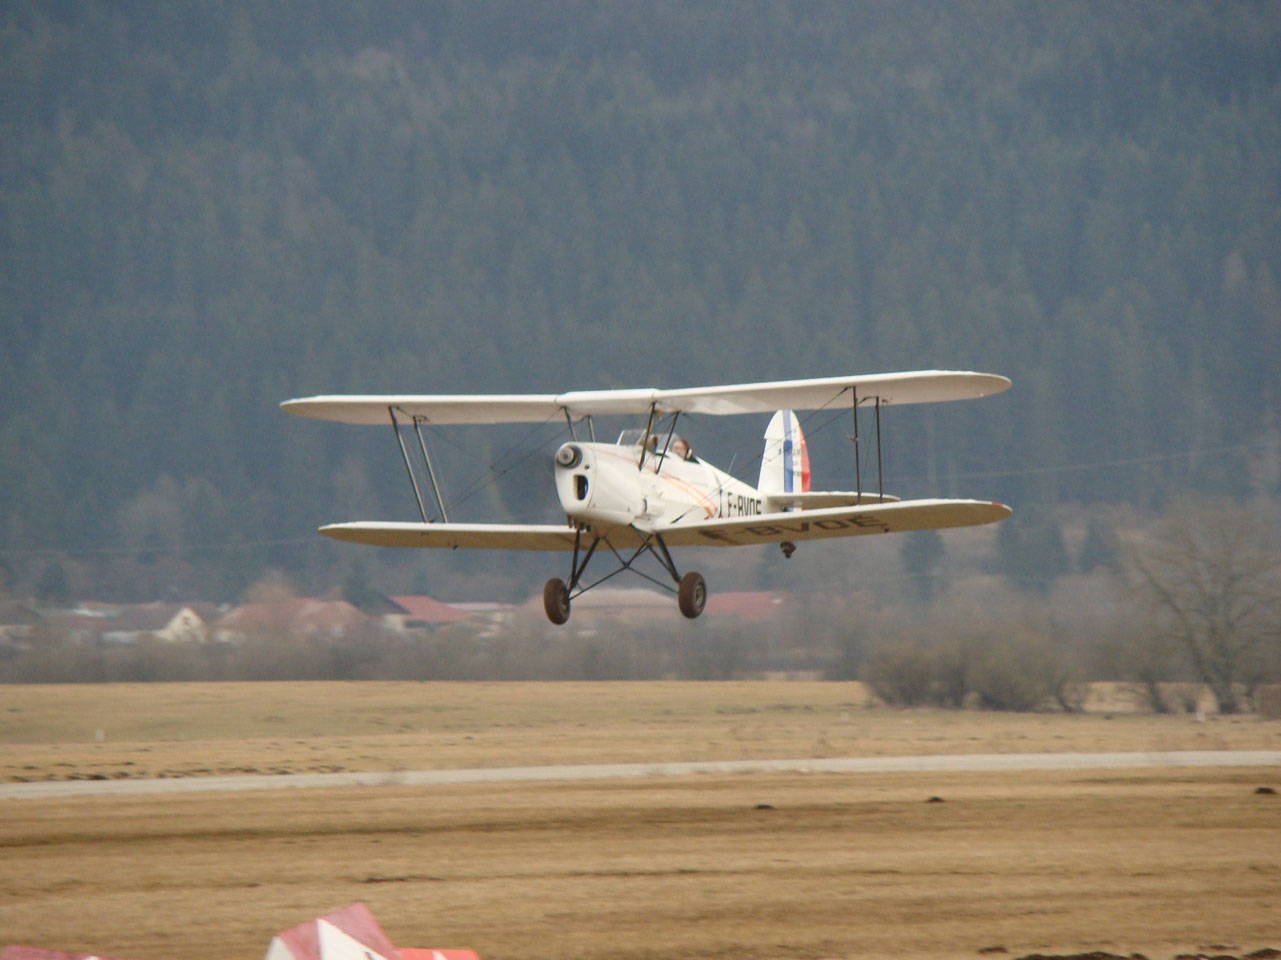 Le Stampe SV4 F-BVOE au décollage en piste 02 à Pontarlier - Photo prise le 19 février 2011